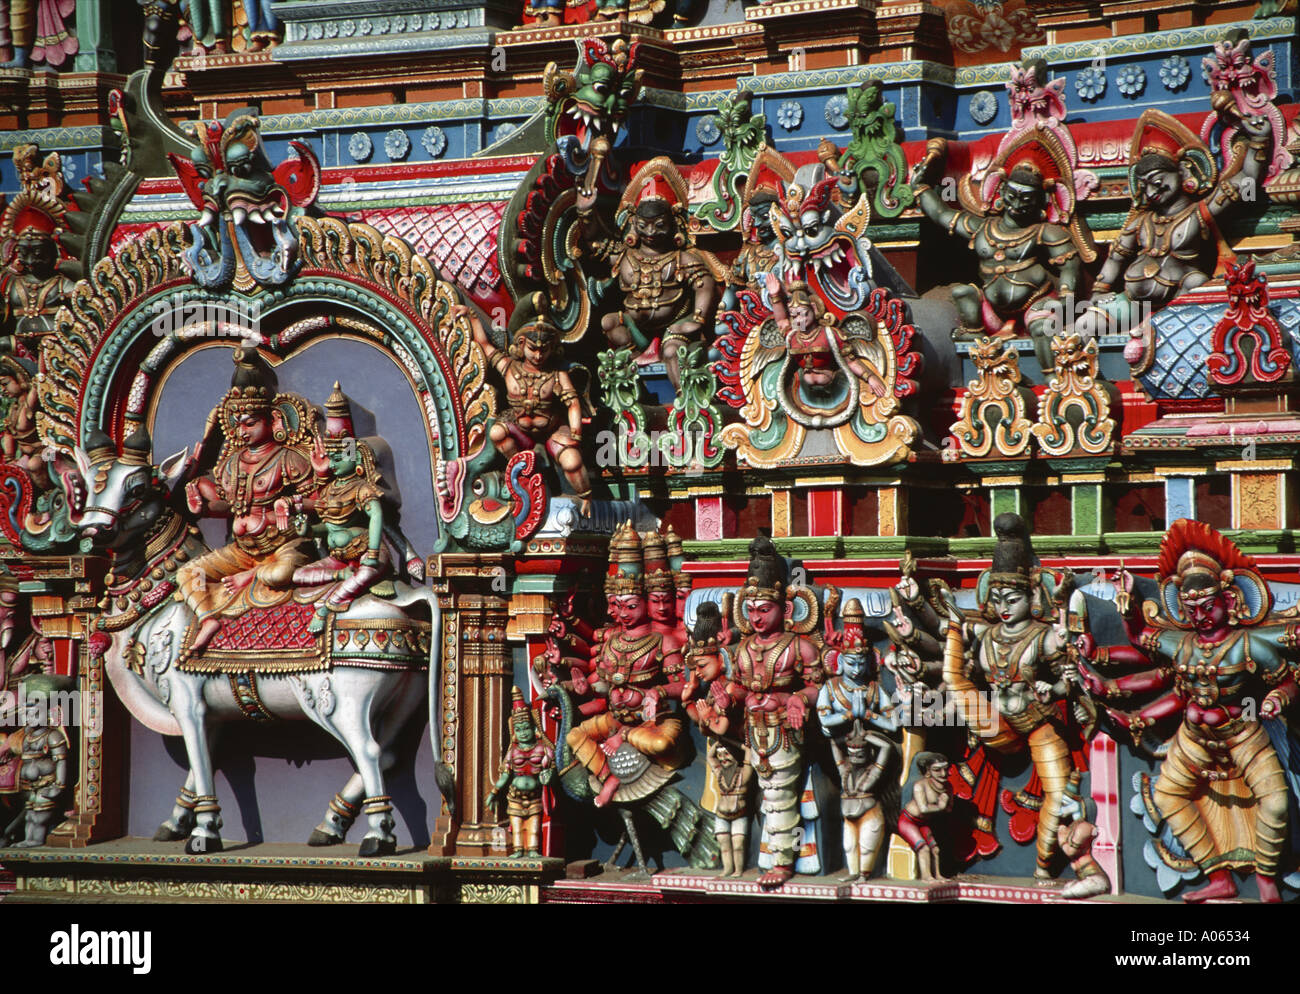 Dettaglio del decorato in maniera colorata gopuram Torre religiosa Shree Meenakshi tempio indù Madurai India Foto Stock